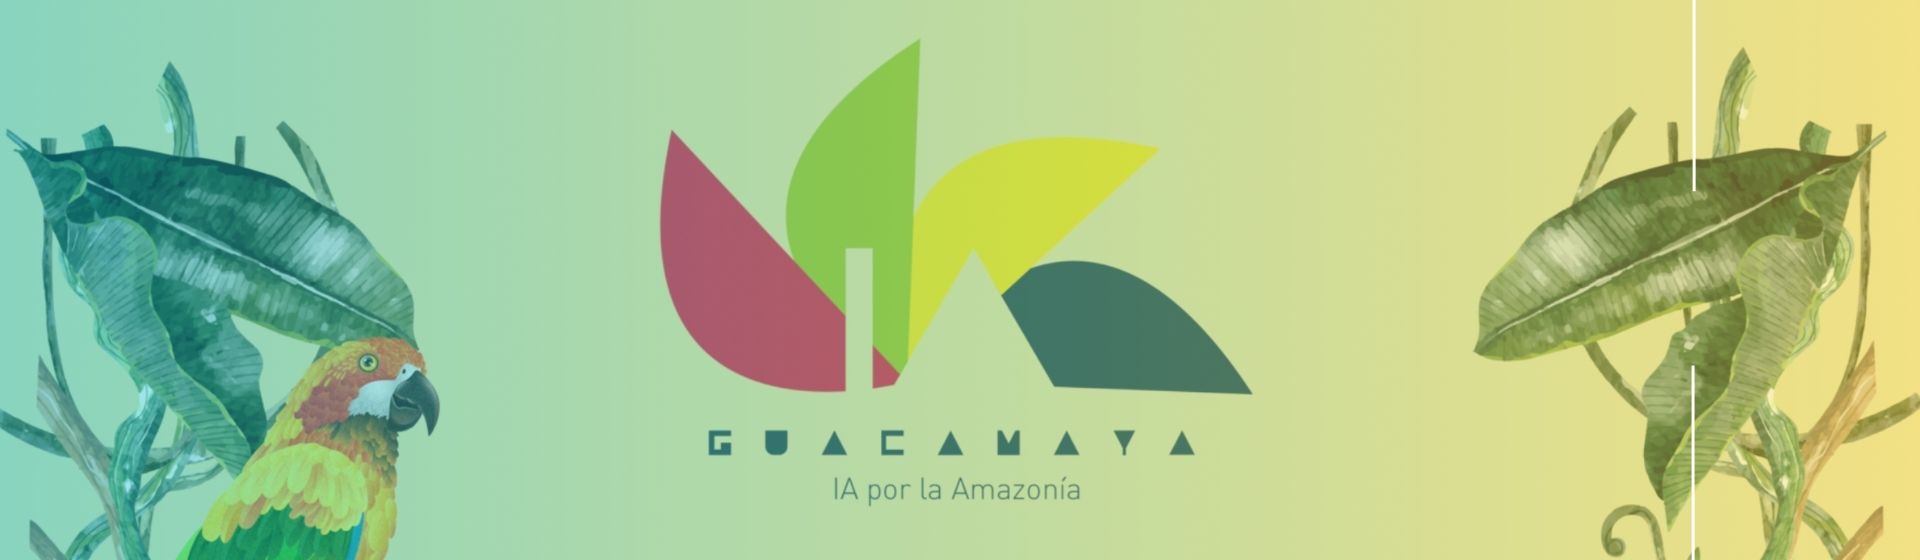 Guacamaya: Salvando el Pulmón del Planeta con Inteligencia Artificial